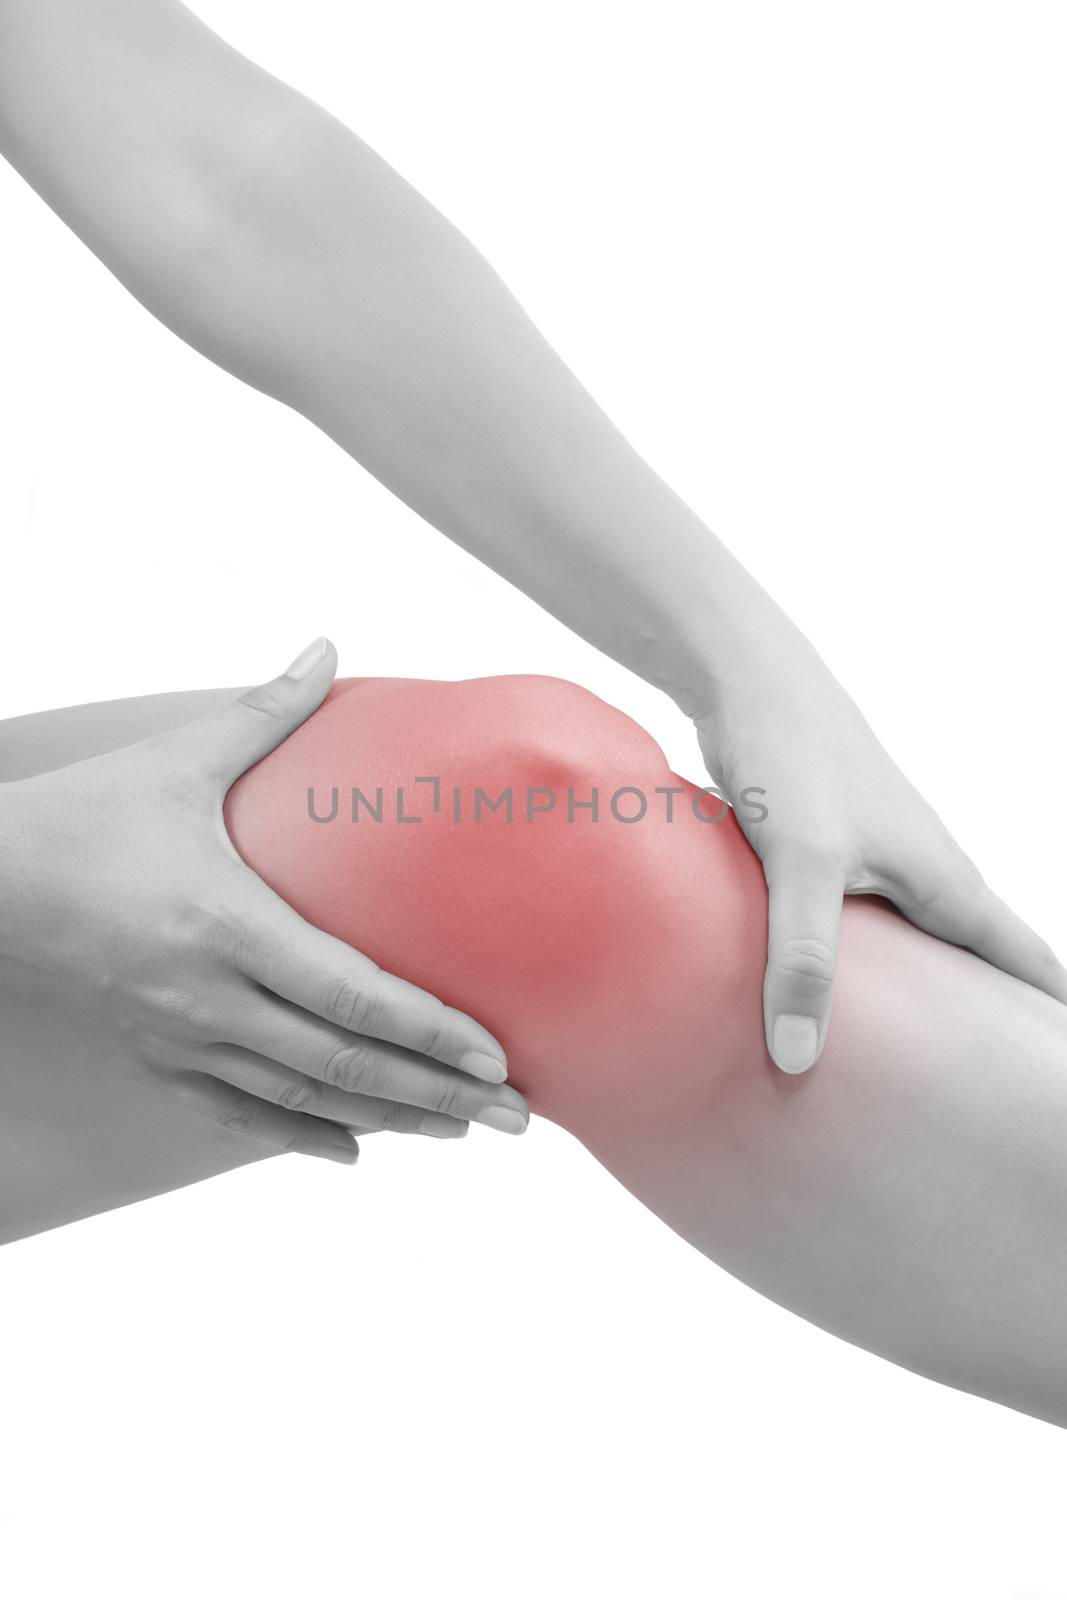 Knee injury. by eskymaks